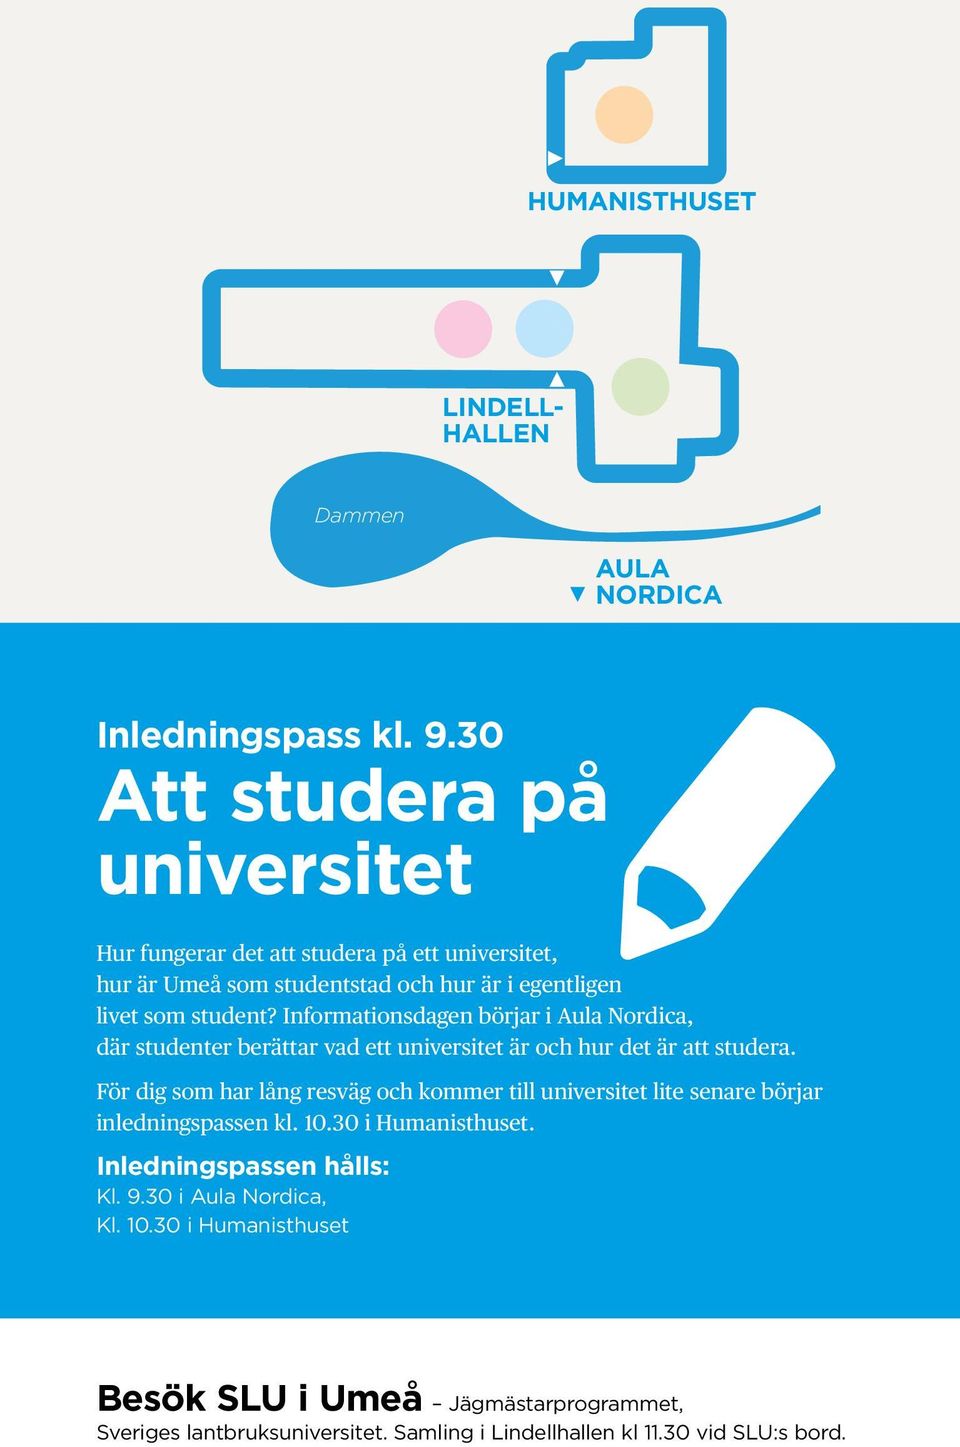 Informationsdagen börjar i Aula Nordica, där studenter berättar vad ett universitet är och hur det är att studera.